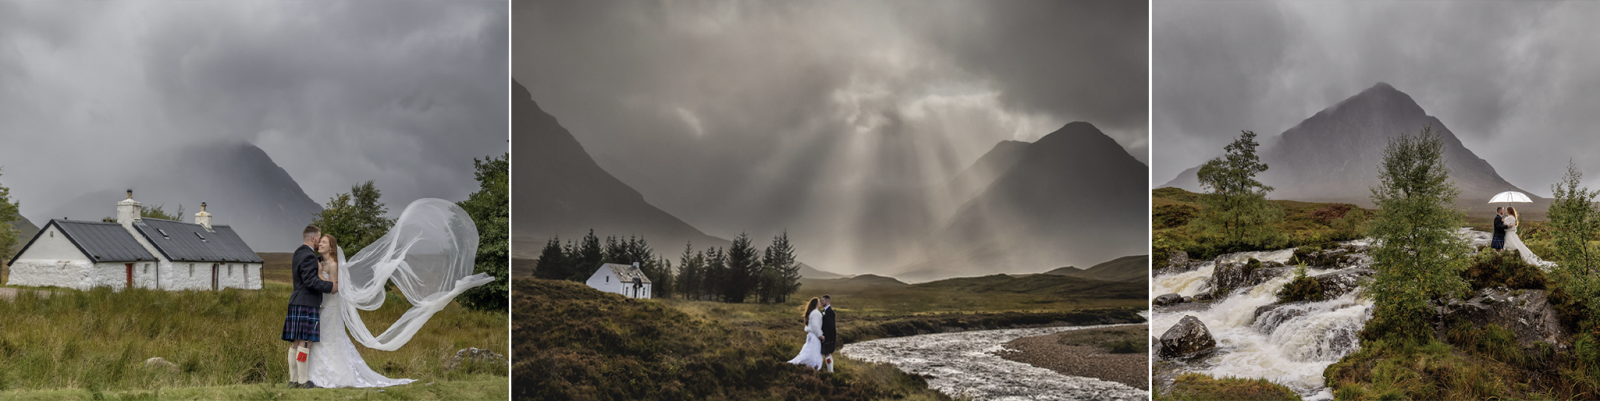 Scottish wedding photography training course